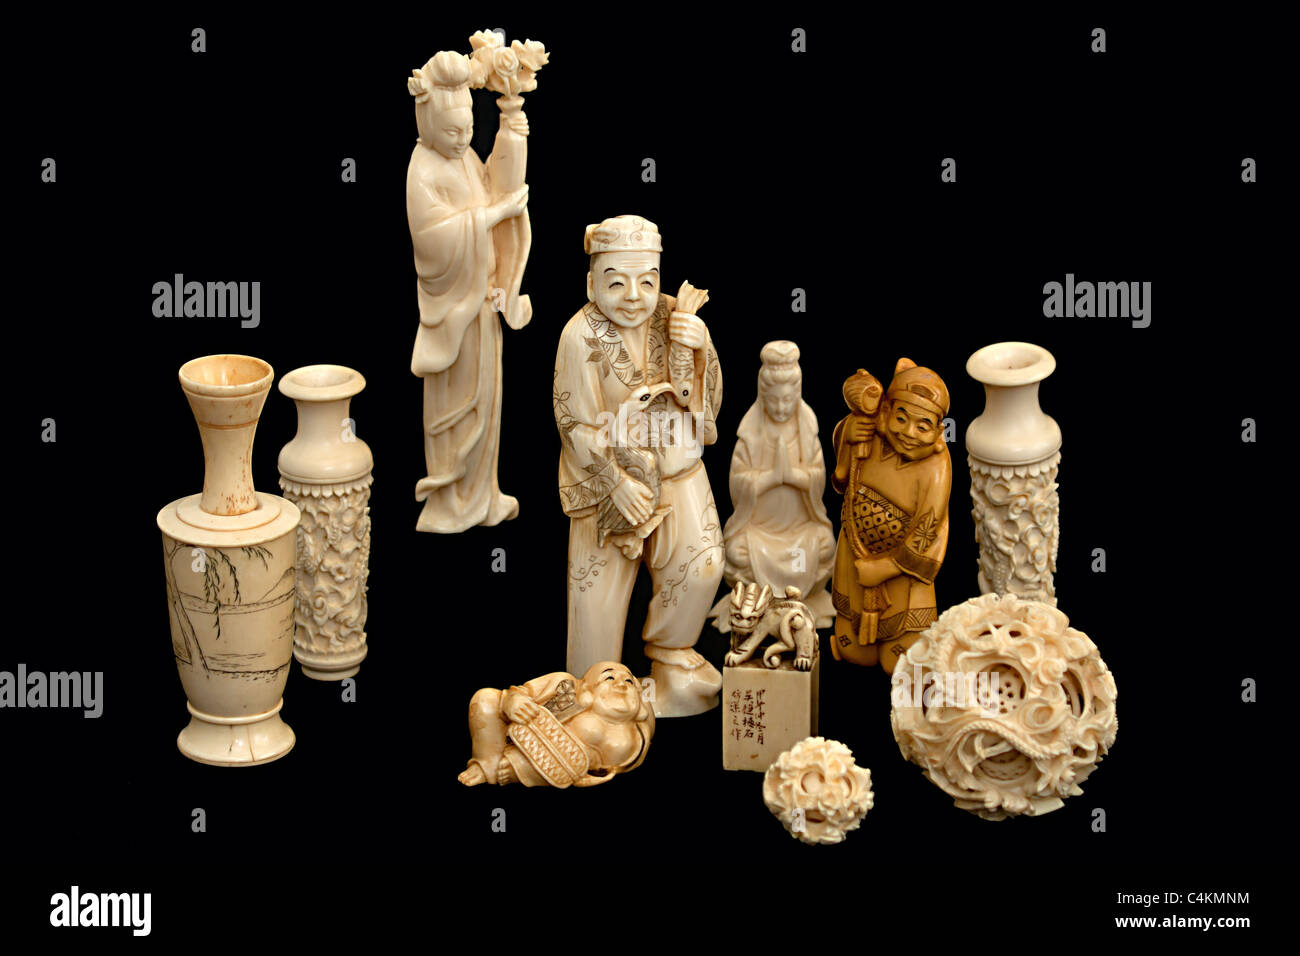 Un groupe de sculptures en ivoire okimono japonais chinois Banque D'Images